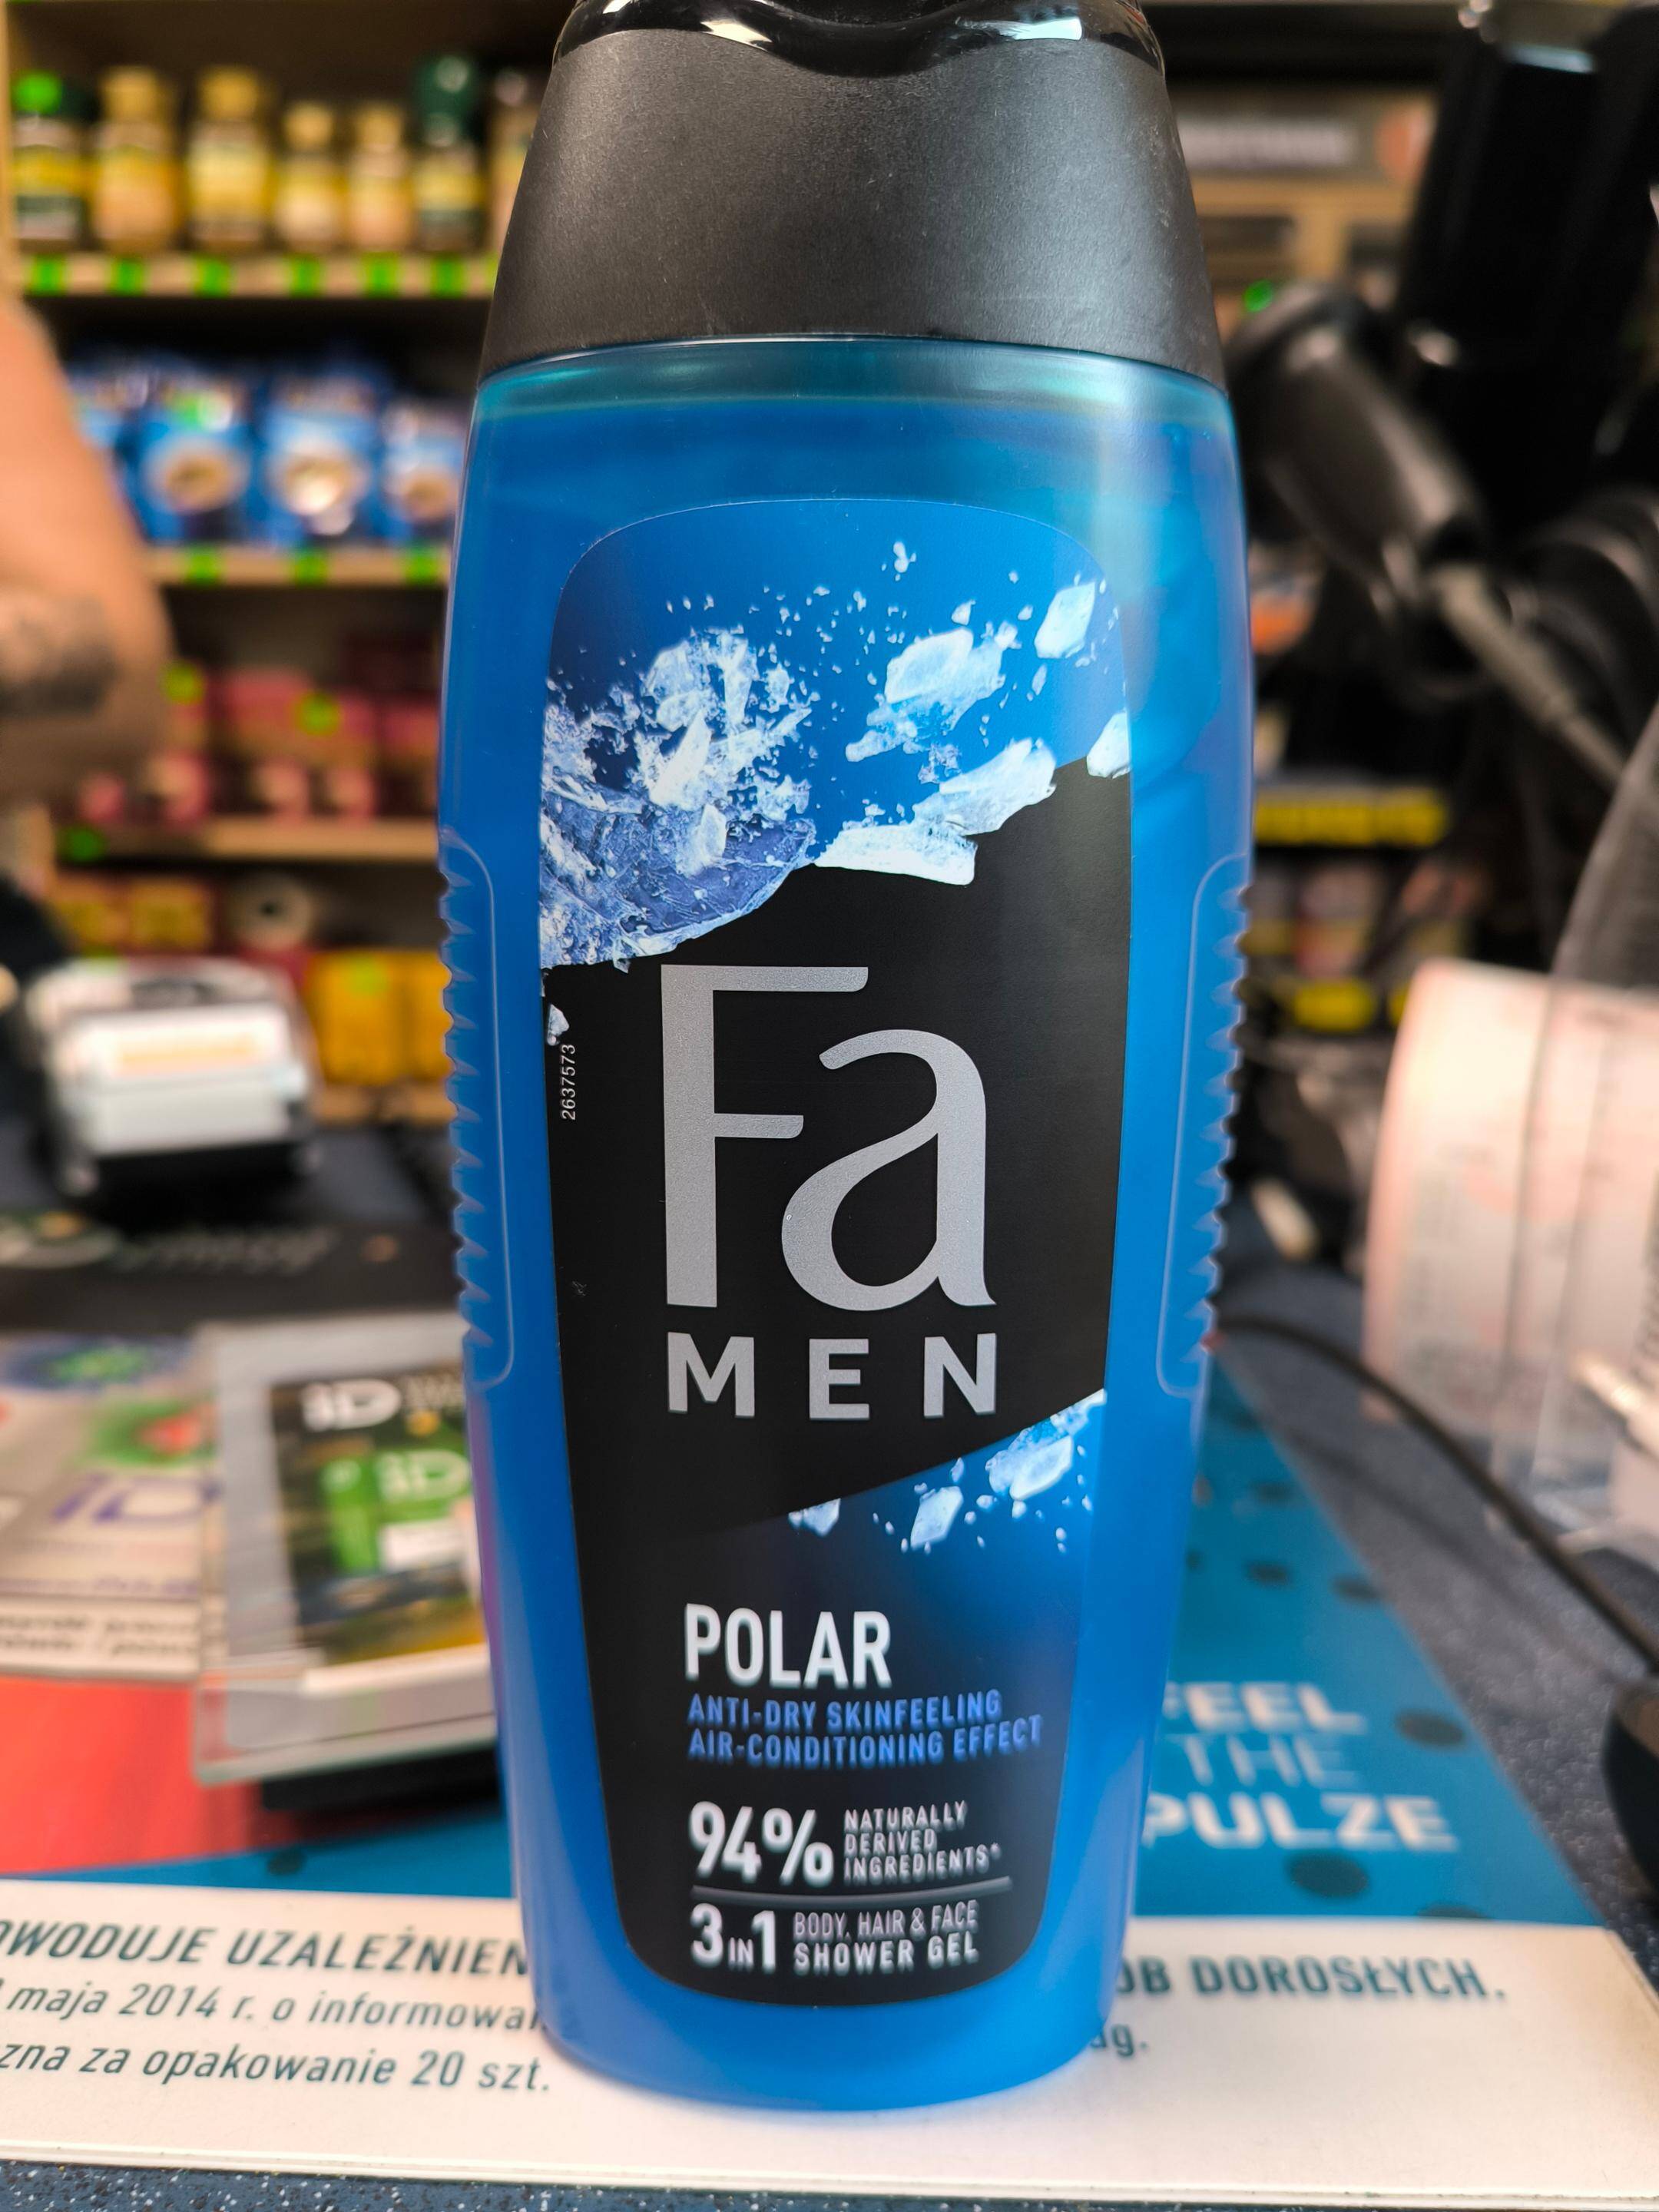 FA Men Xtreme Polar żel pod prysznic do mycia ciała i włosów dla mężczyzn 400ml